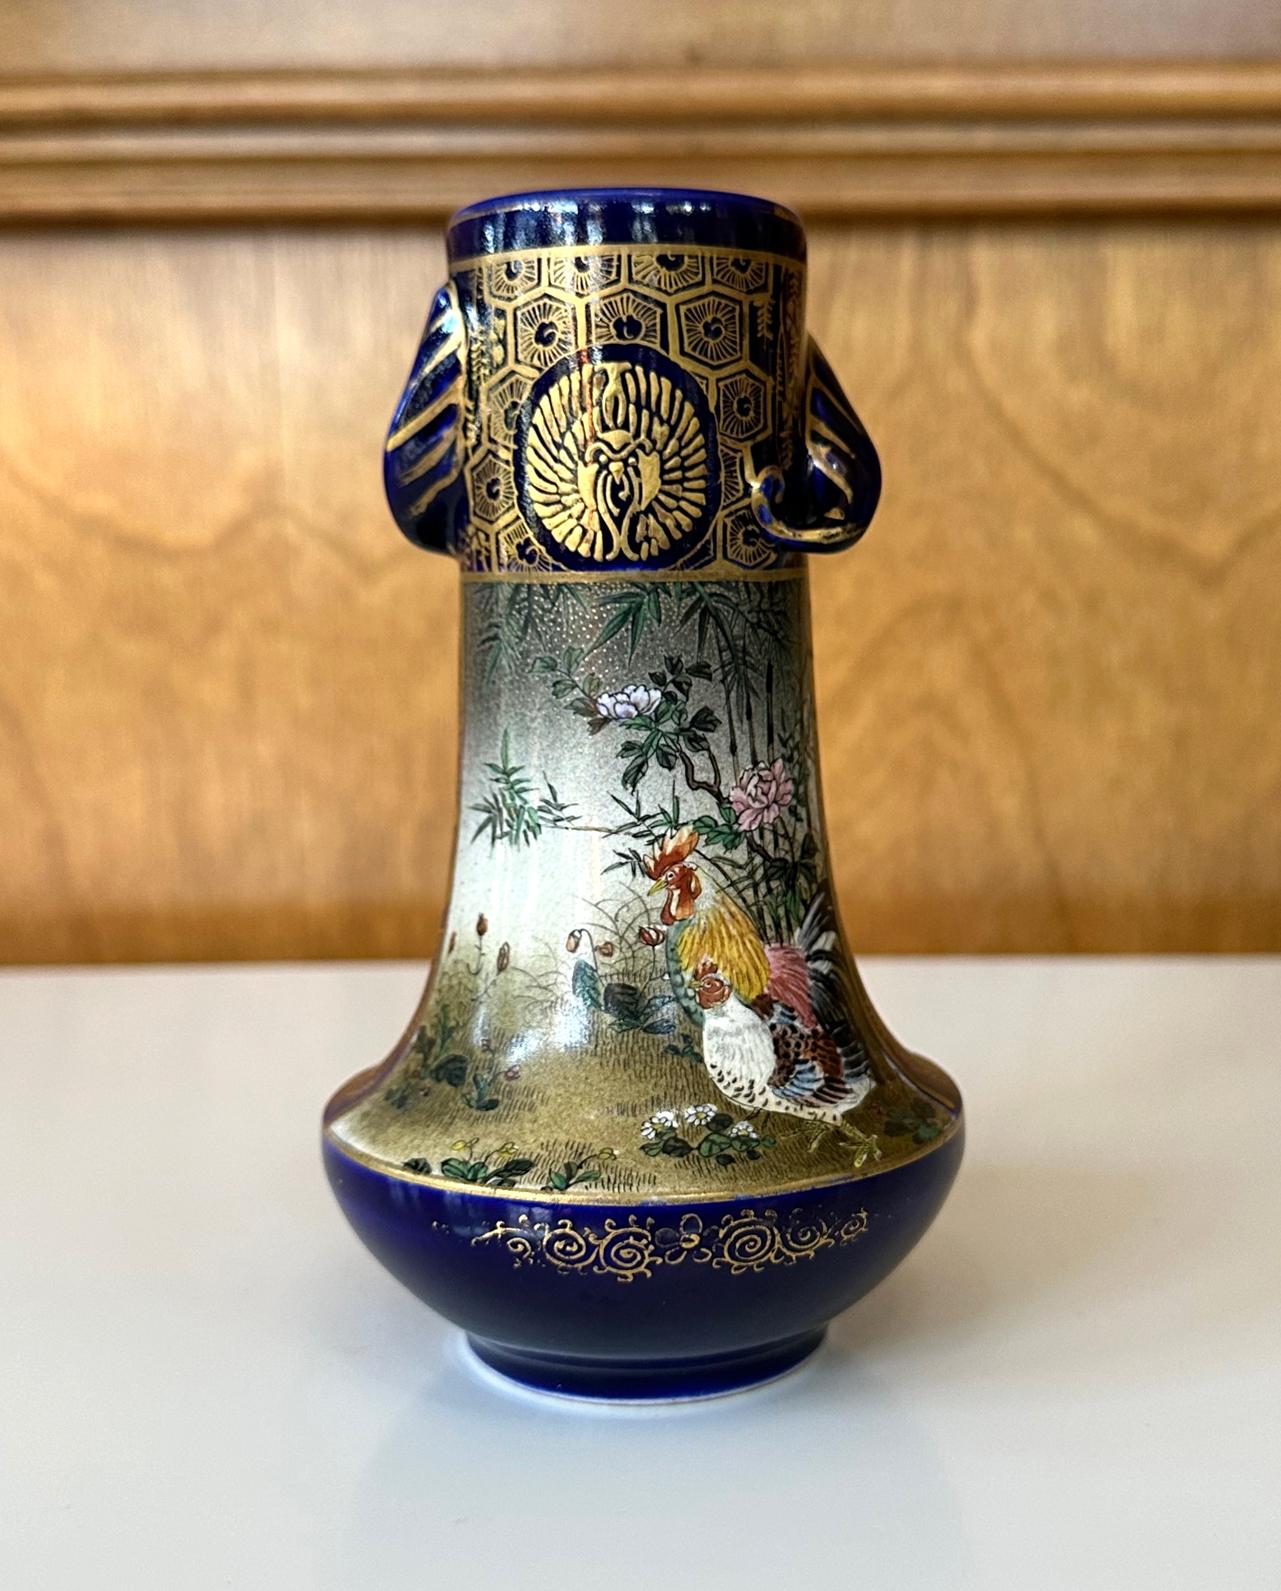 Vase miniature en céramique japonaise de la fin de la période Meiji, vers 1880-1910, par Kinkozan (1645-1927). L'un des plus grands studios de fabrication de céramiques d'exportation de l'époque, basé à Kyoto. Décoré dans le style emblématique du